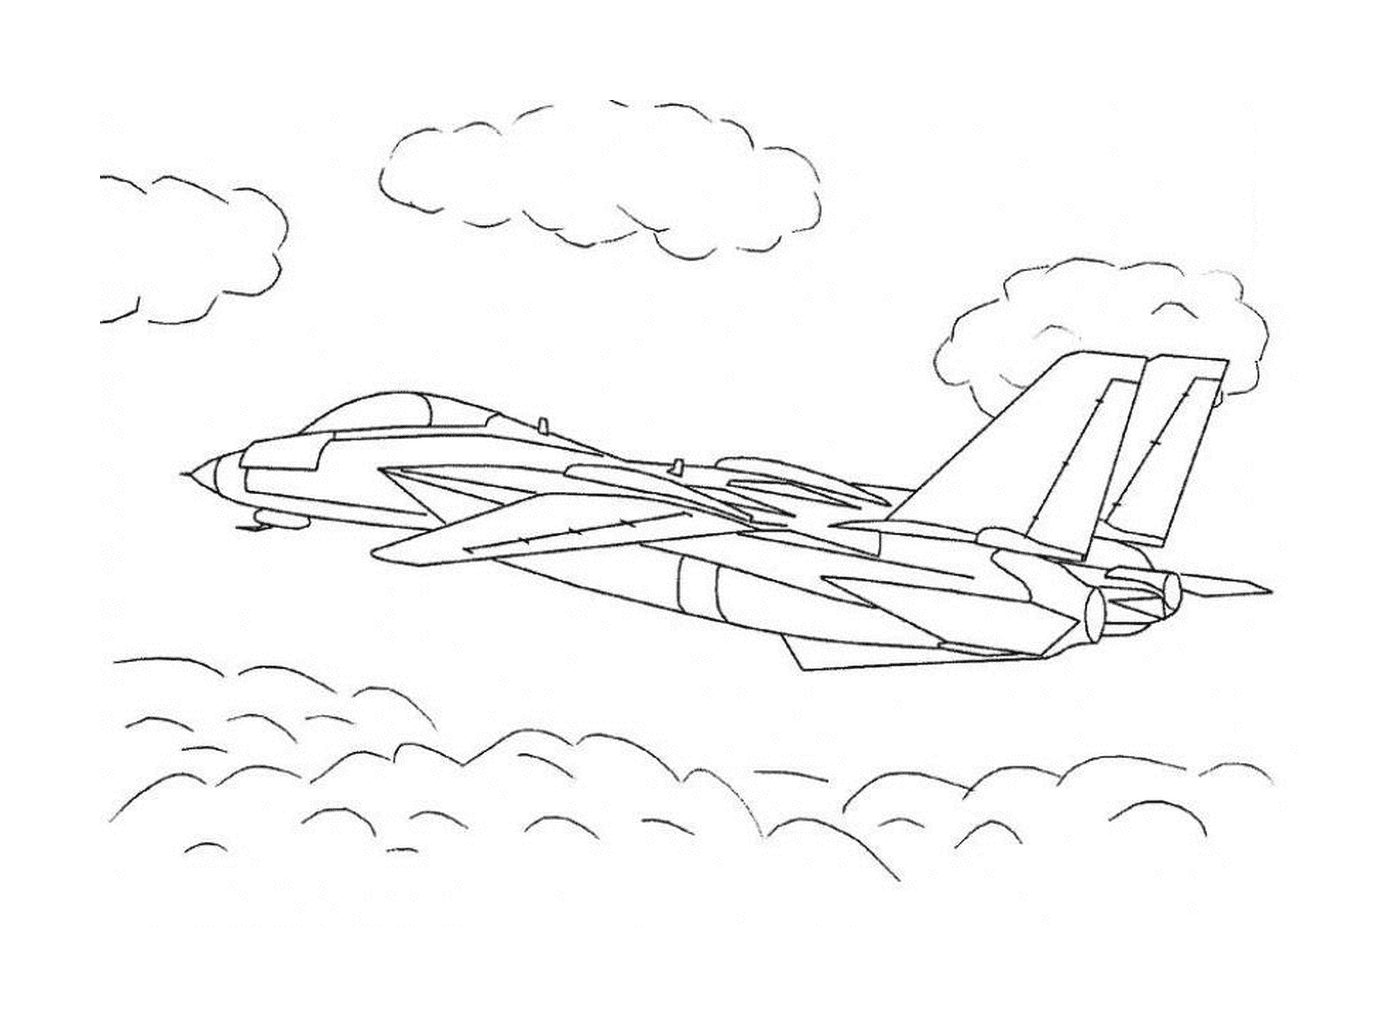   Un avion de chasse vole dans le ciel 